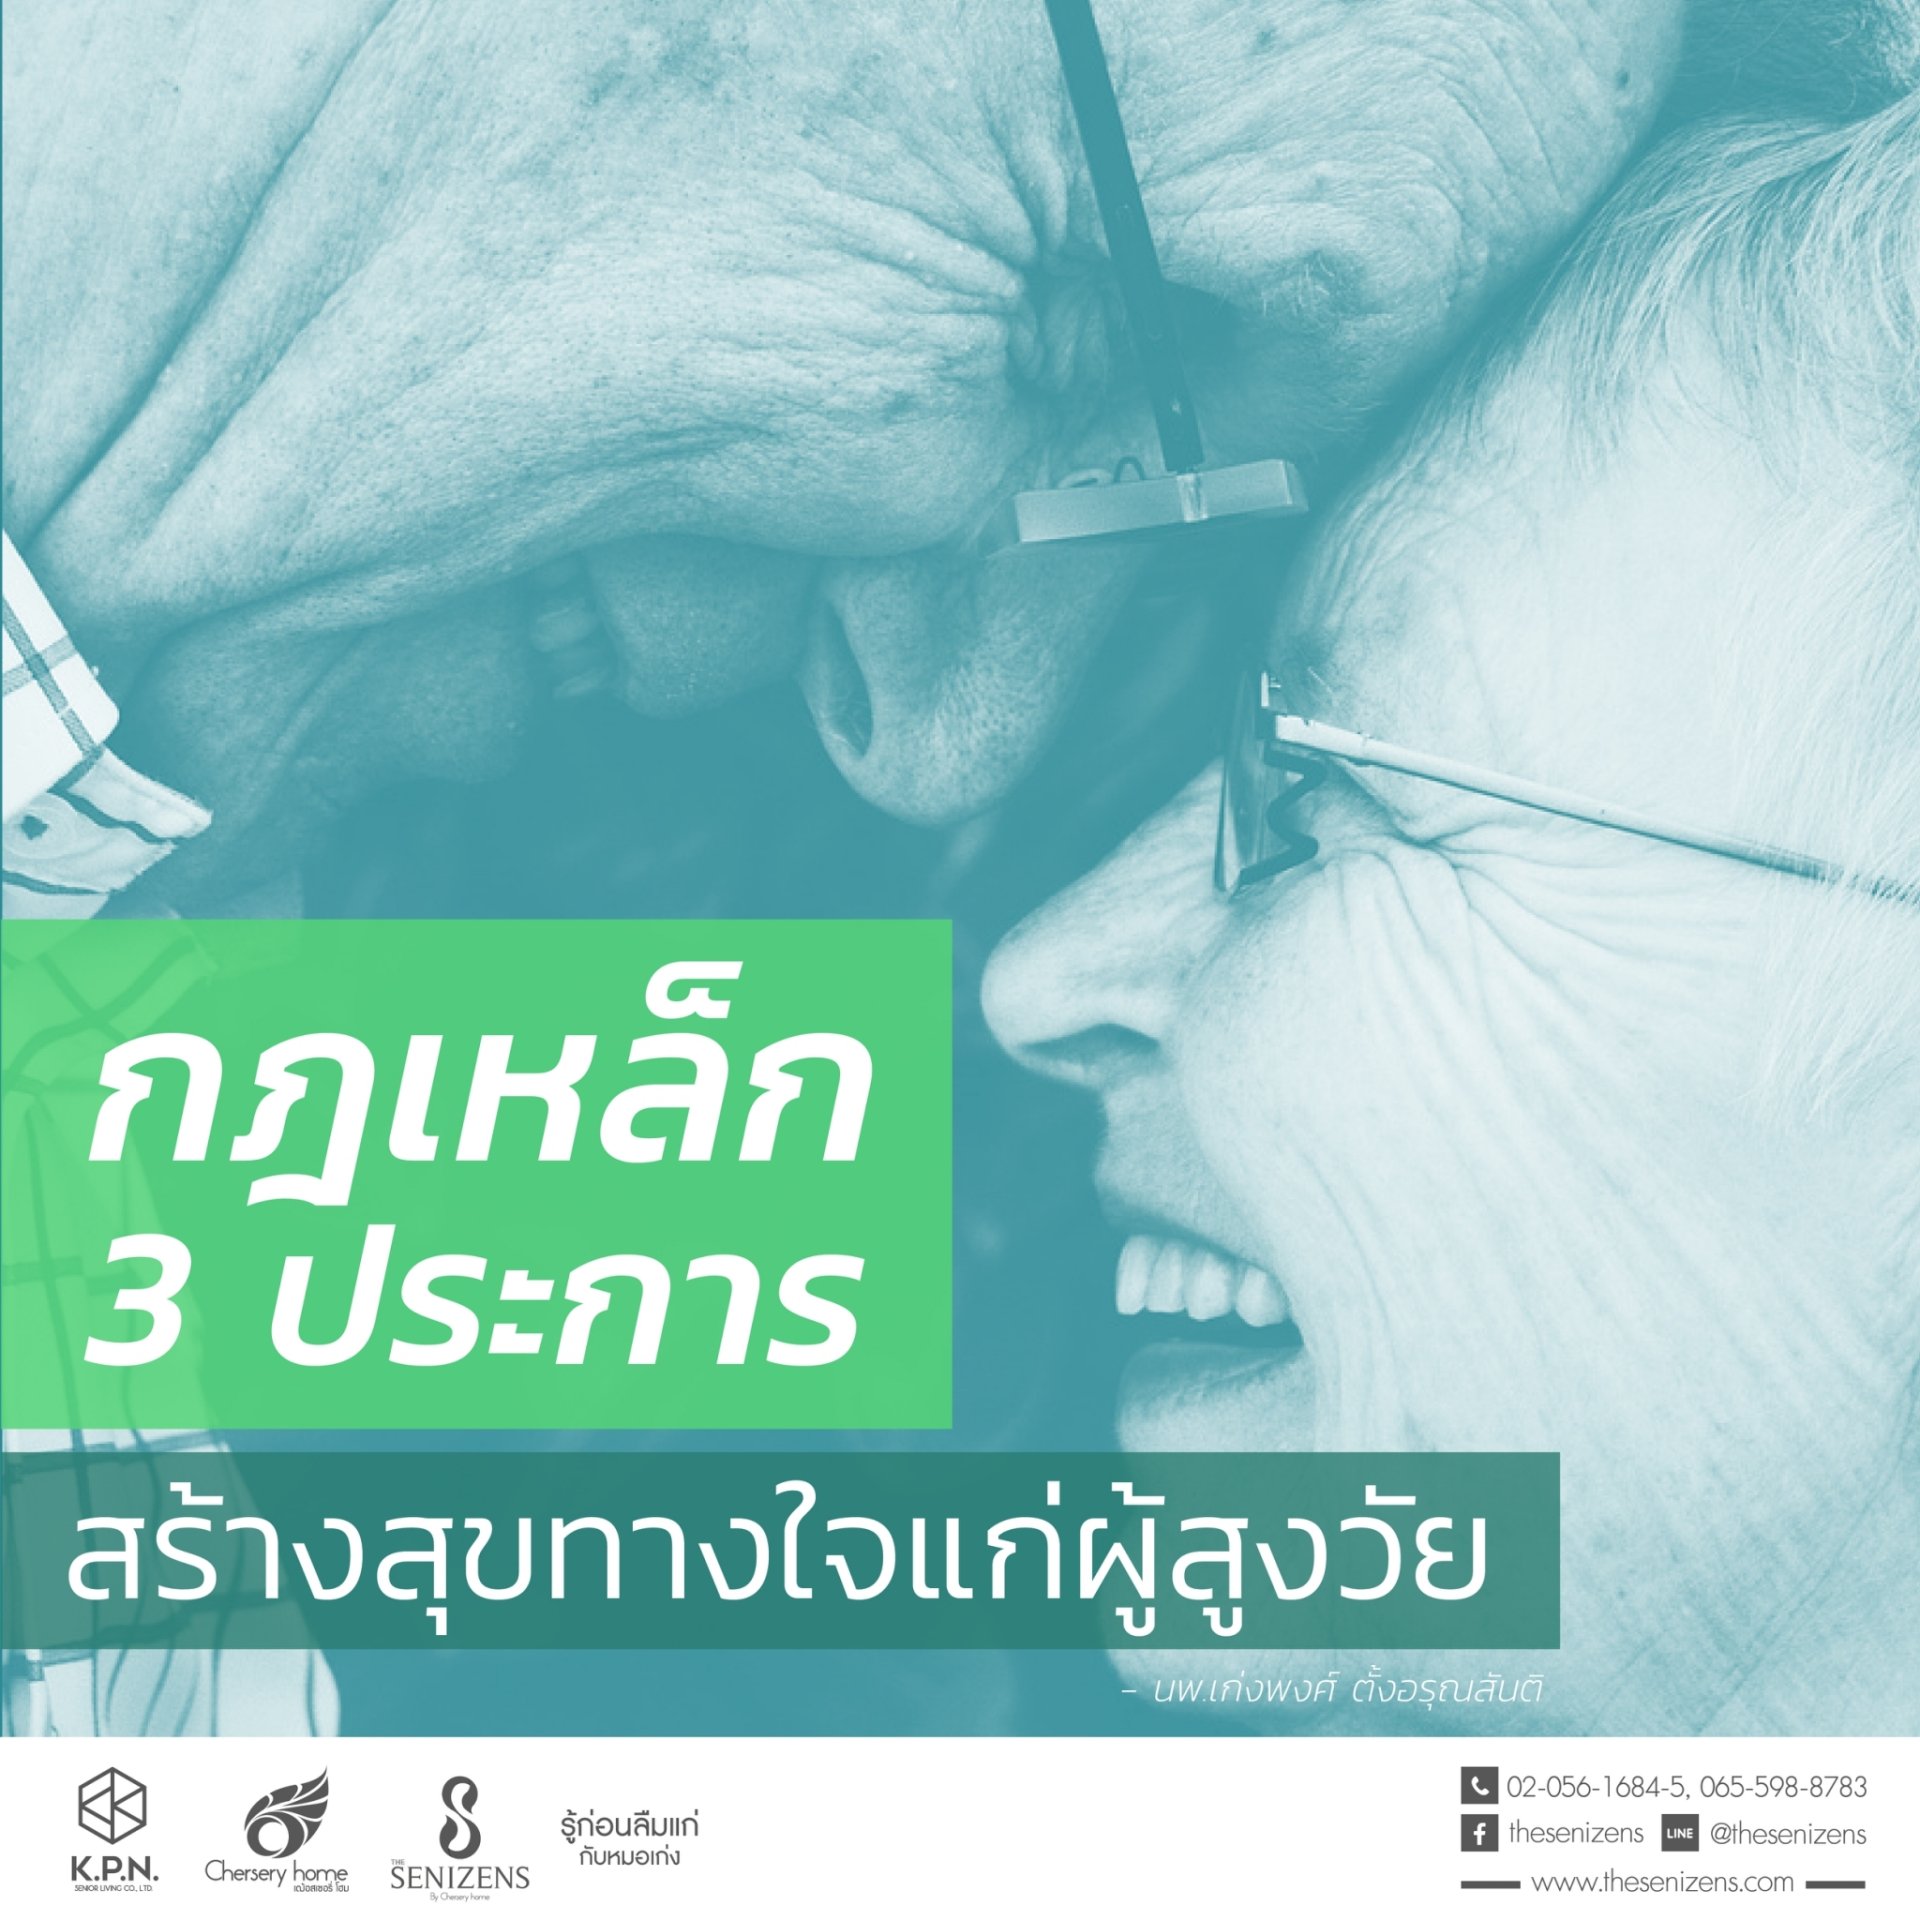 “ กฎเหล็ก 3 ประการ สร้างสุขทางใจแก่ผู้สูงวัย | รพ.ผู้สูงอายุ Chersery Home